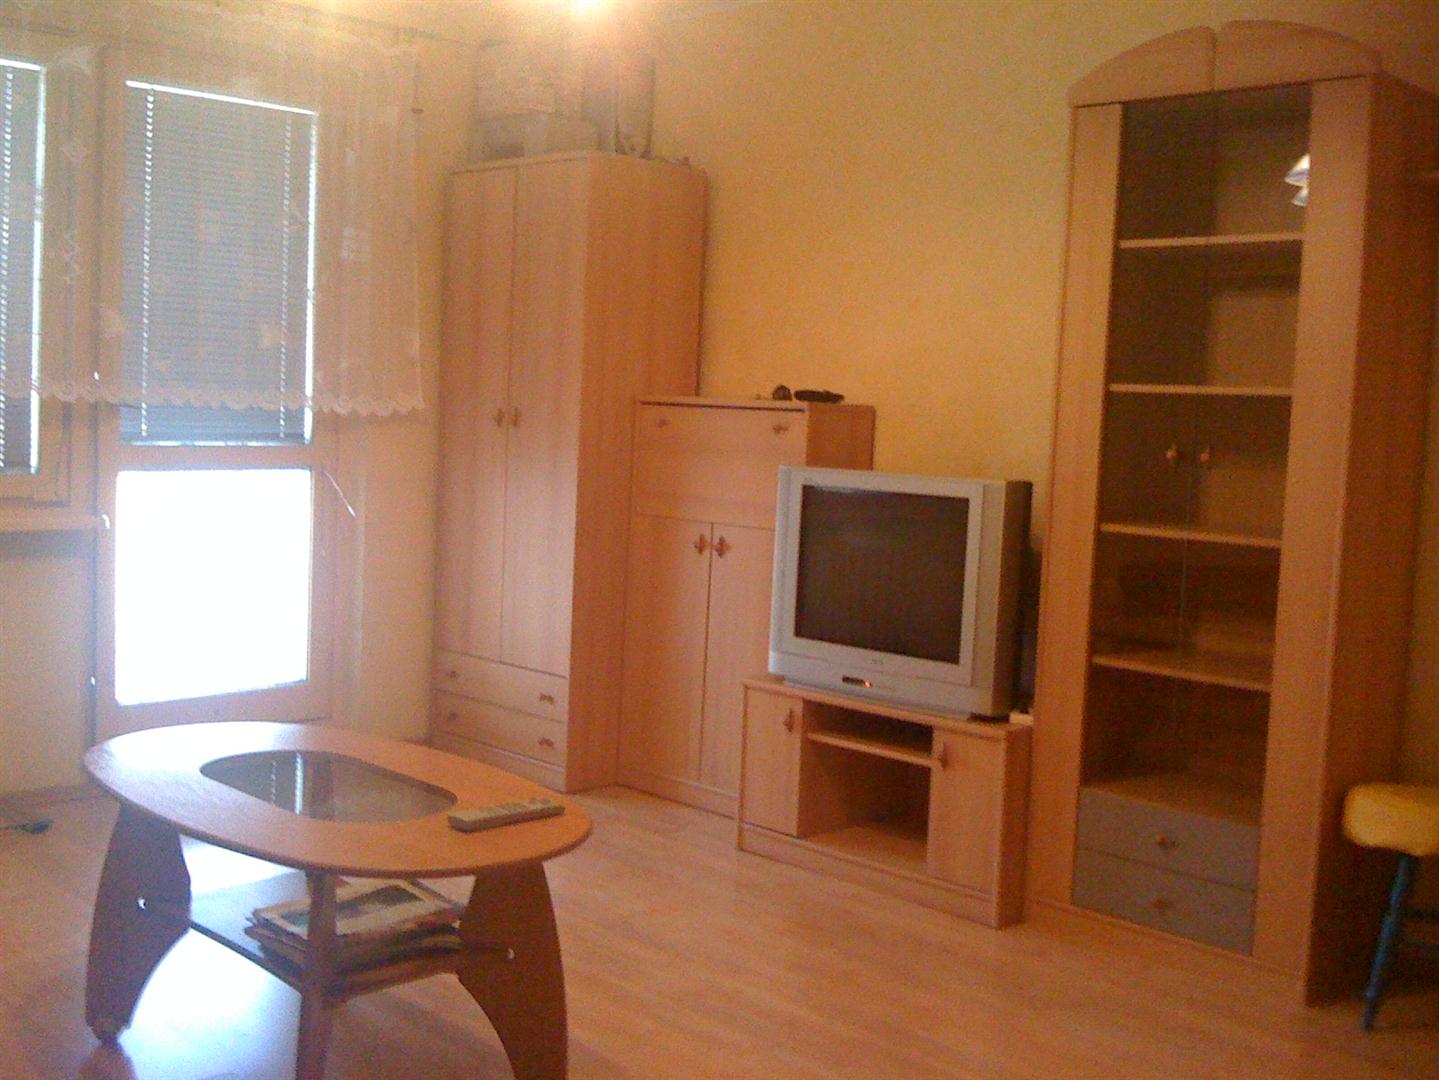 Zdjęcie do ogłoszenia NOWA OFERTA! dwa pokoje, trzy miejsca, Cechowa 23 (Fordon), idealne dla studentów UTP! TANIO